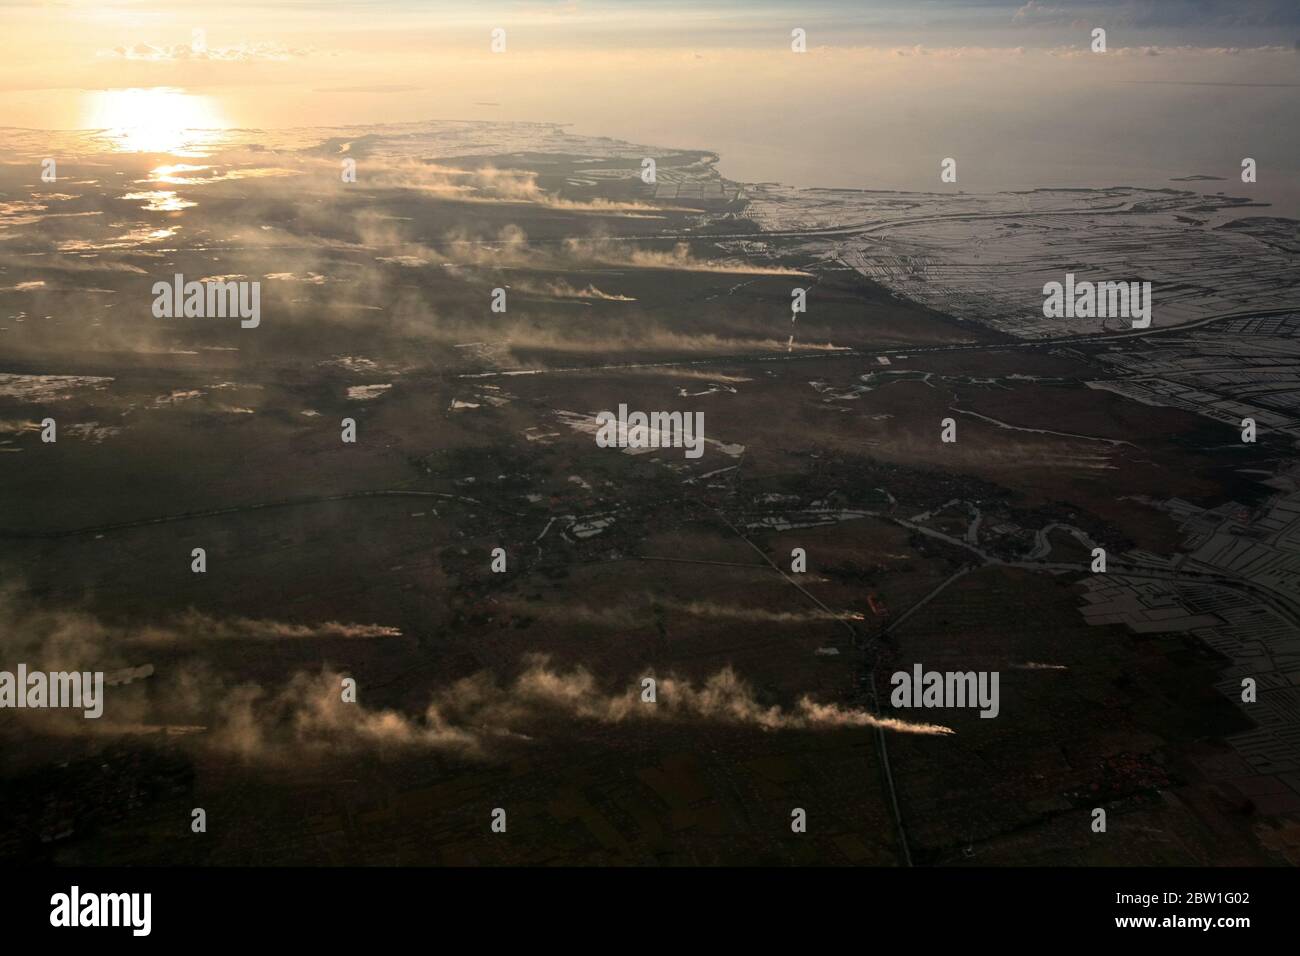 Vista aérea del paisaje costero que muestra campos agrícolas, fumaras, canales, granjas de camarones marinos y cacerolas de sal en la costa norte de la provincia de Banten, Indonesia. Foto de archivo; en vuelo. Foto de stock